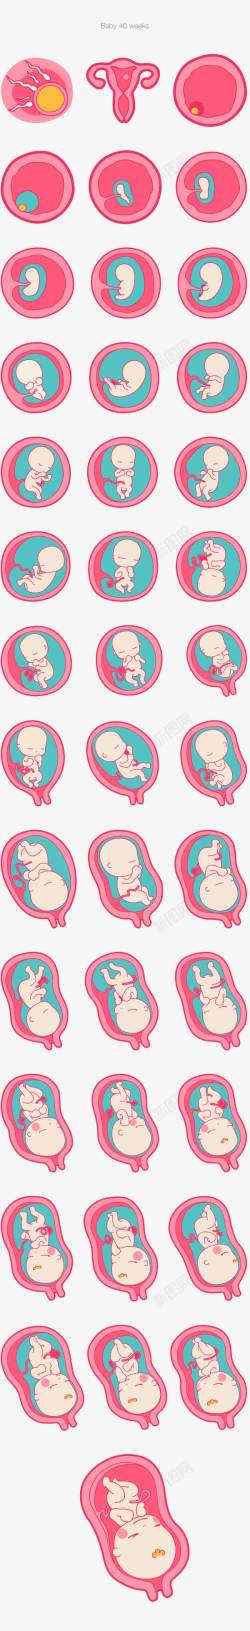 胚胎发育素材